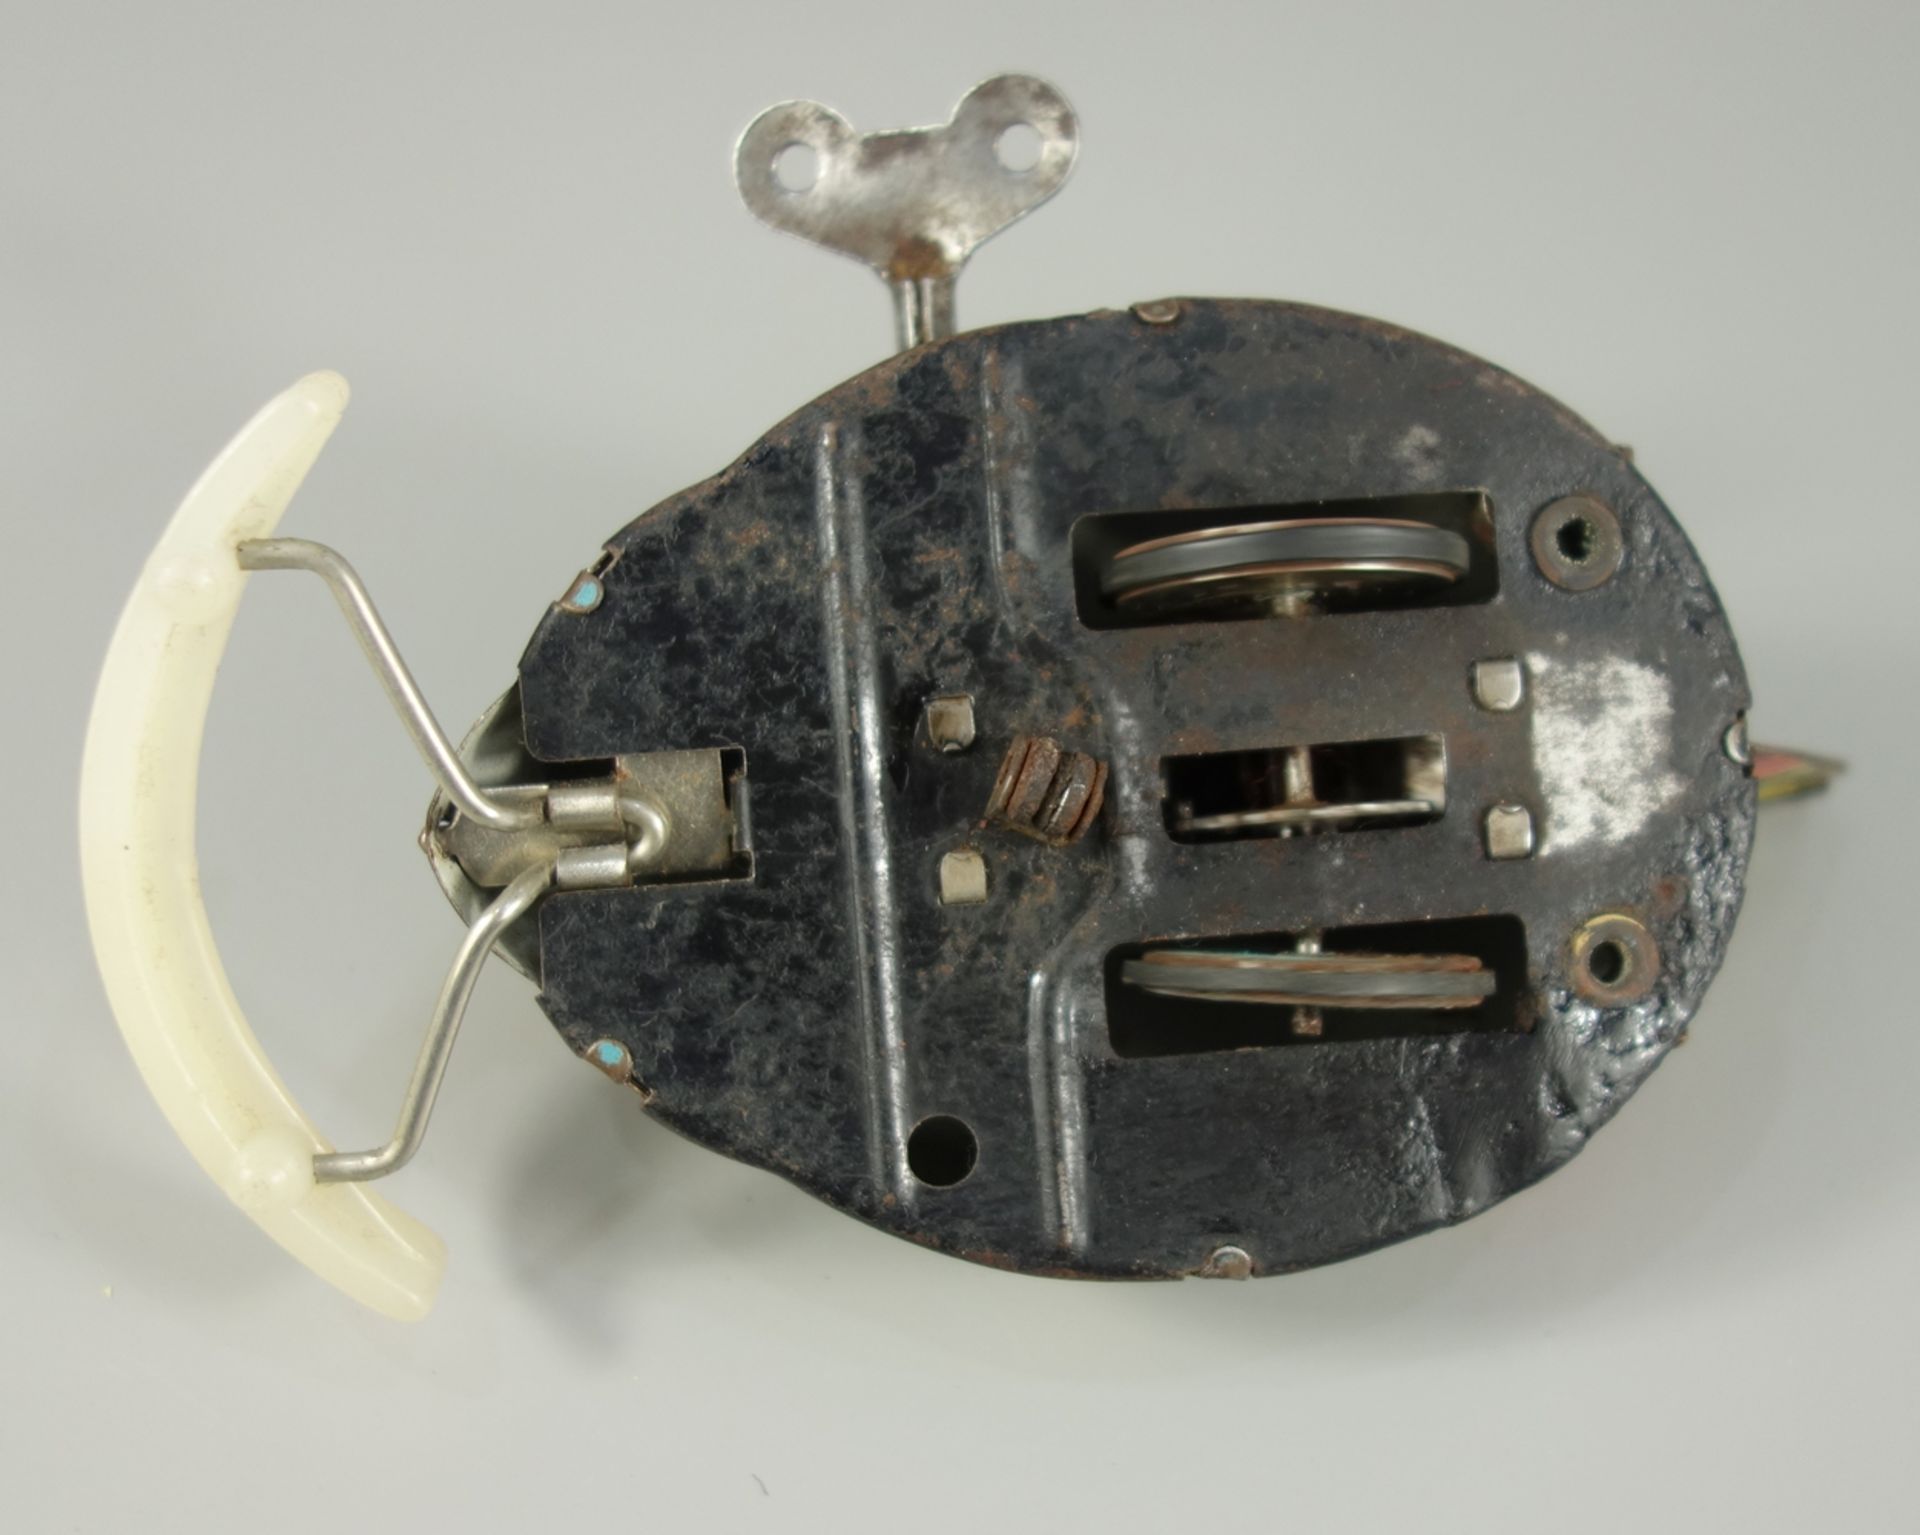 Mondfahrzeug "LUNA" mit Schlüsselaufzug, Blechspielzeug, 1950er Jahre, lithographiertes Blech, - Bild 2 aus 2